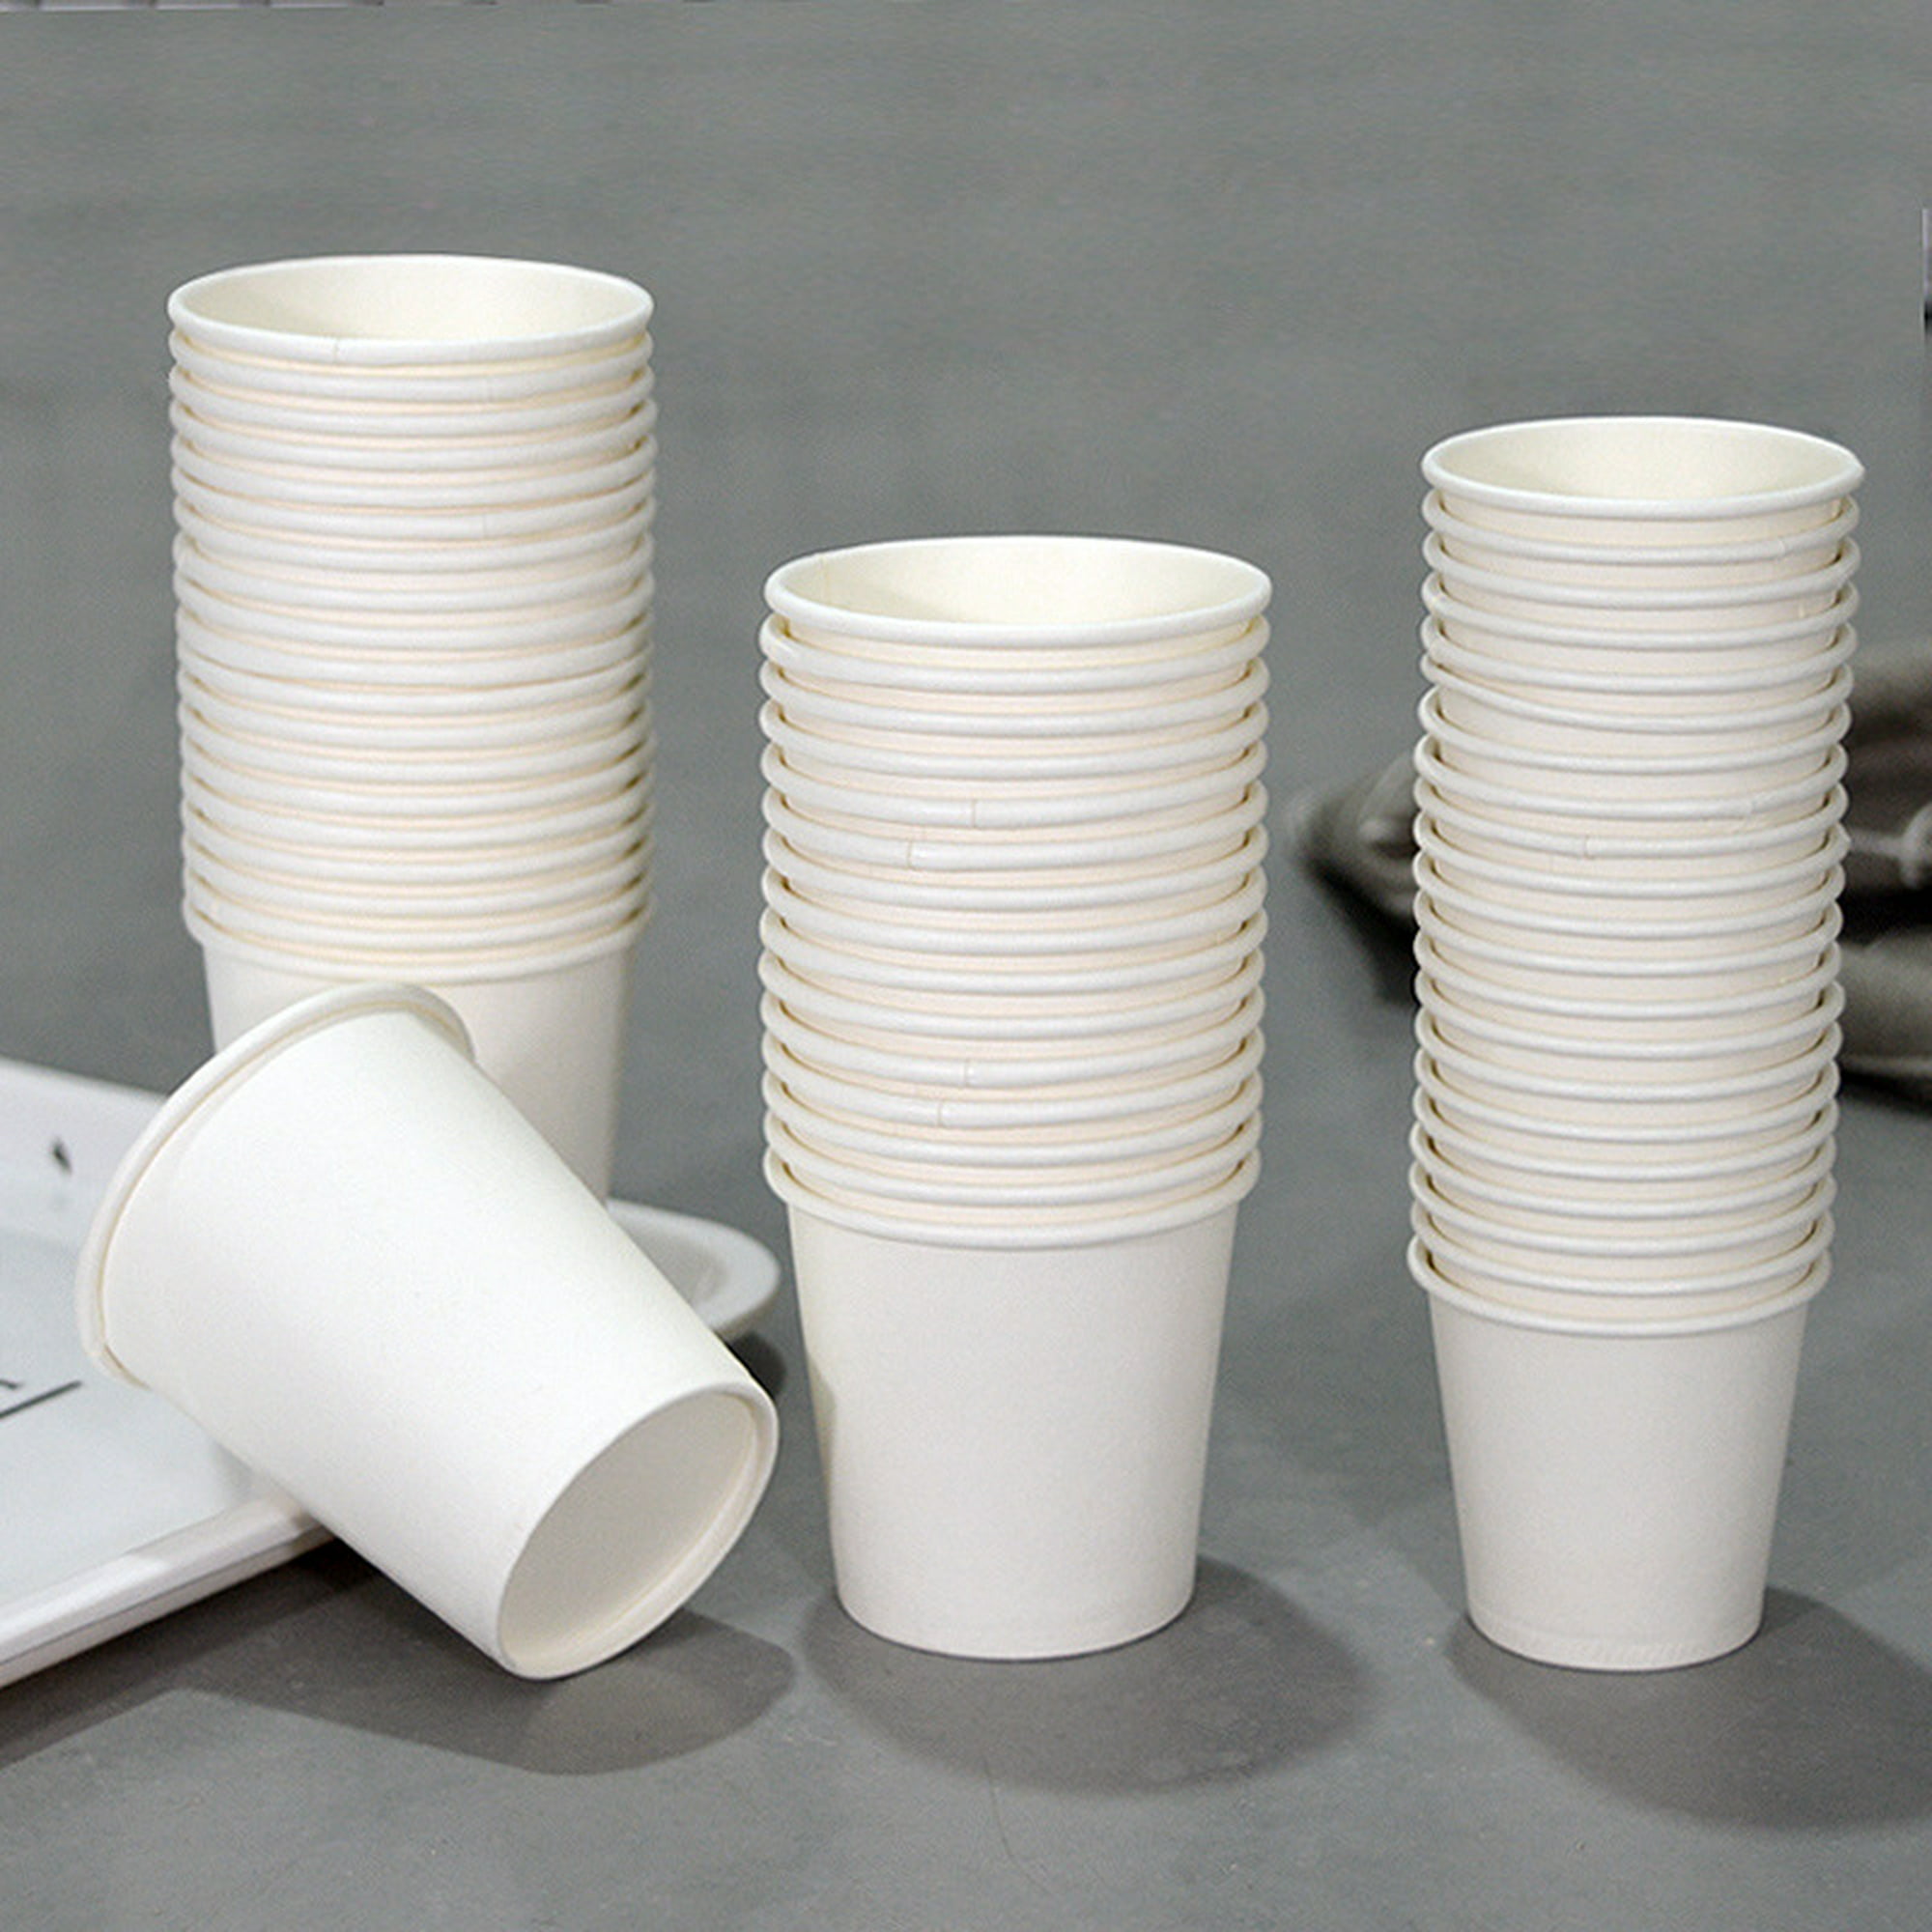 Paquete de 100 vasos desechables de papel blanco de 8 oz – Taza